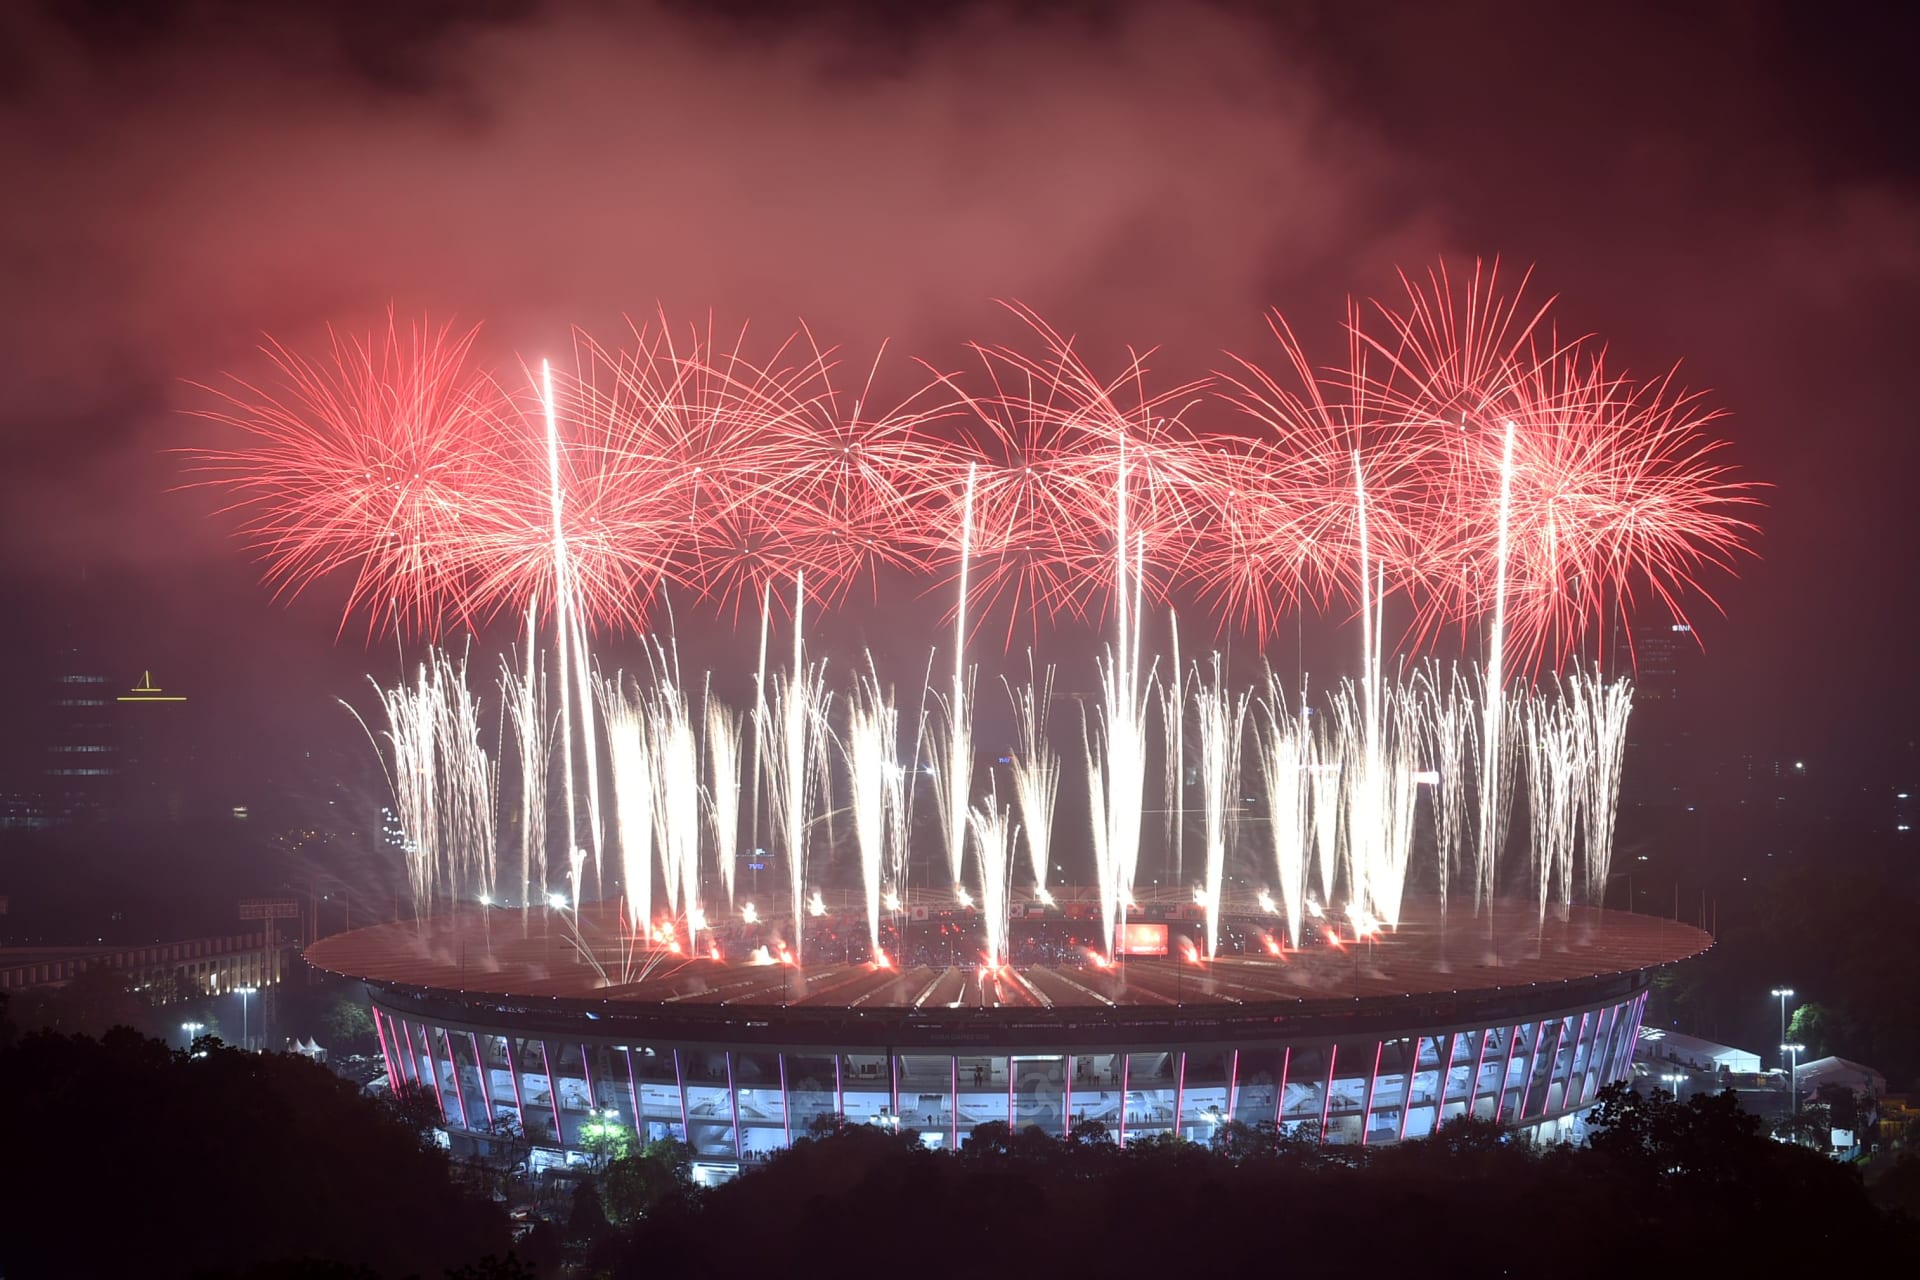 قطر تفوز بحق استضافة الألعاب الآسيوية 2030.. ورسالة من جوعان بن حمد للوفد السعودي